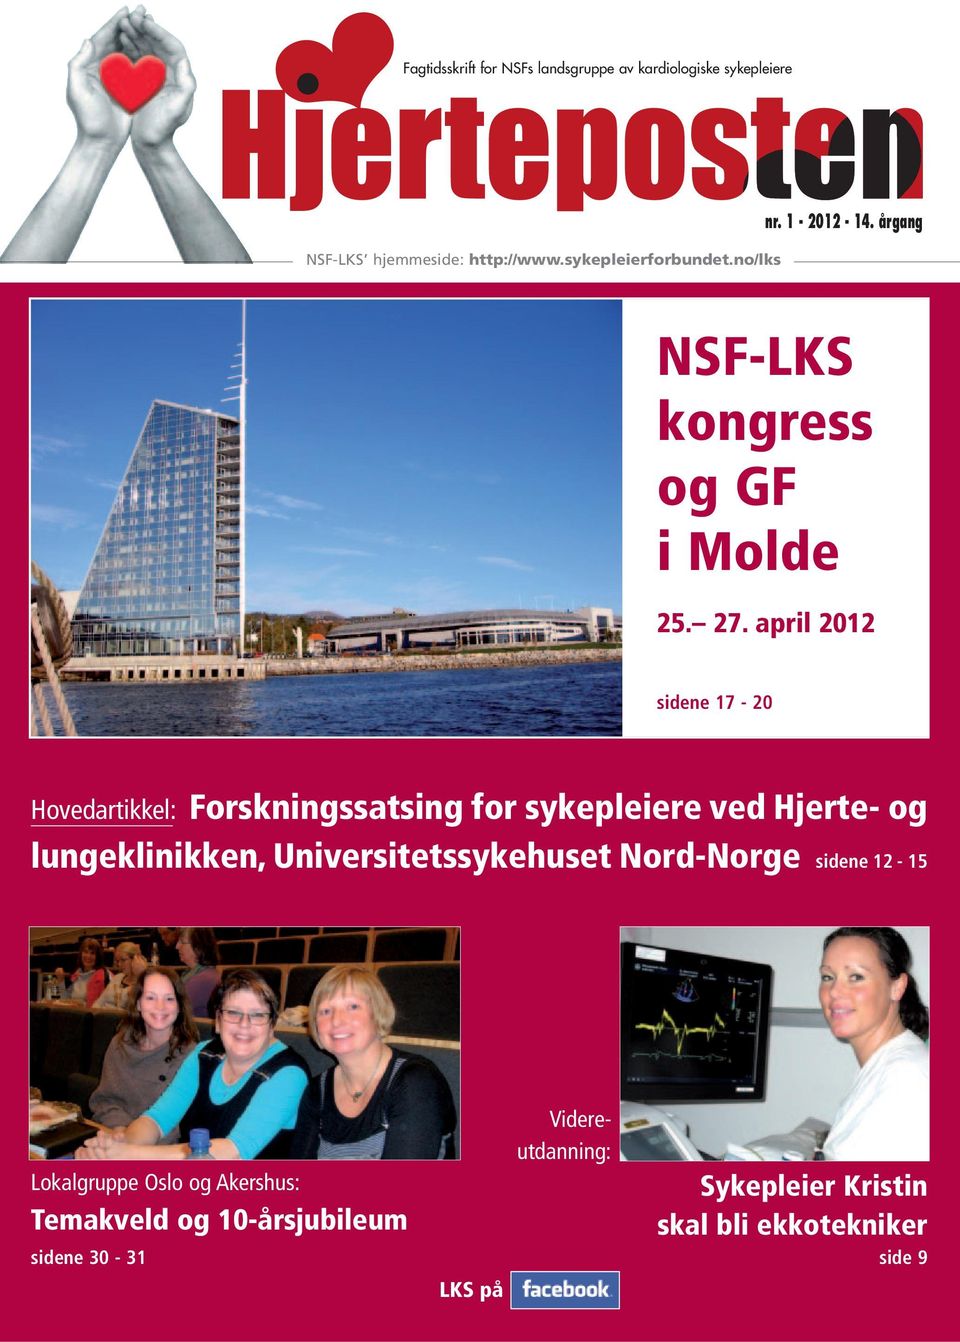 april 2012 sidene 17-20 Hovedartikkel: Forskningssatsing for sykepleiere ved Hjerte- og lungeklinikken,